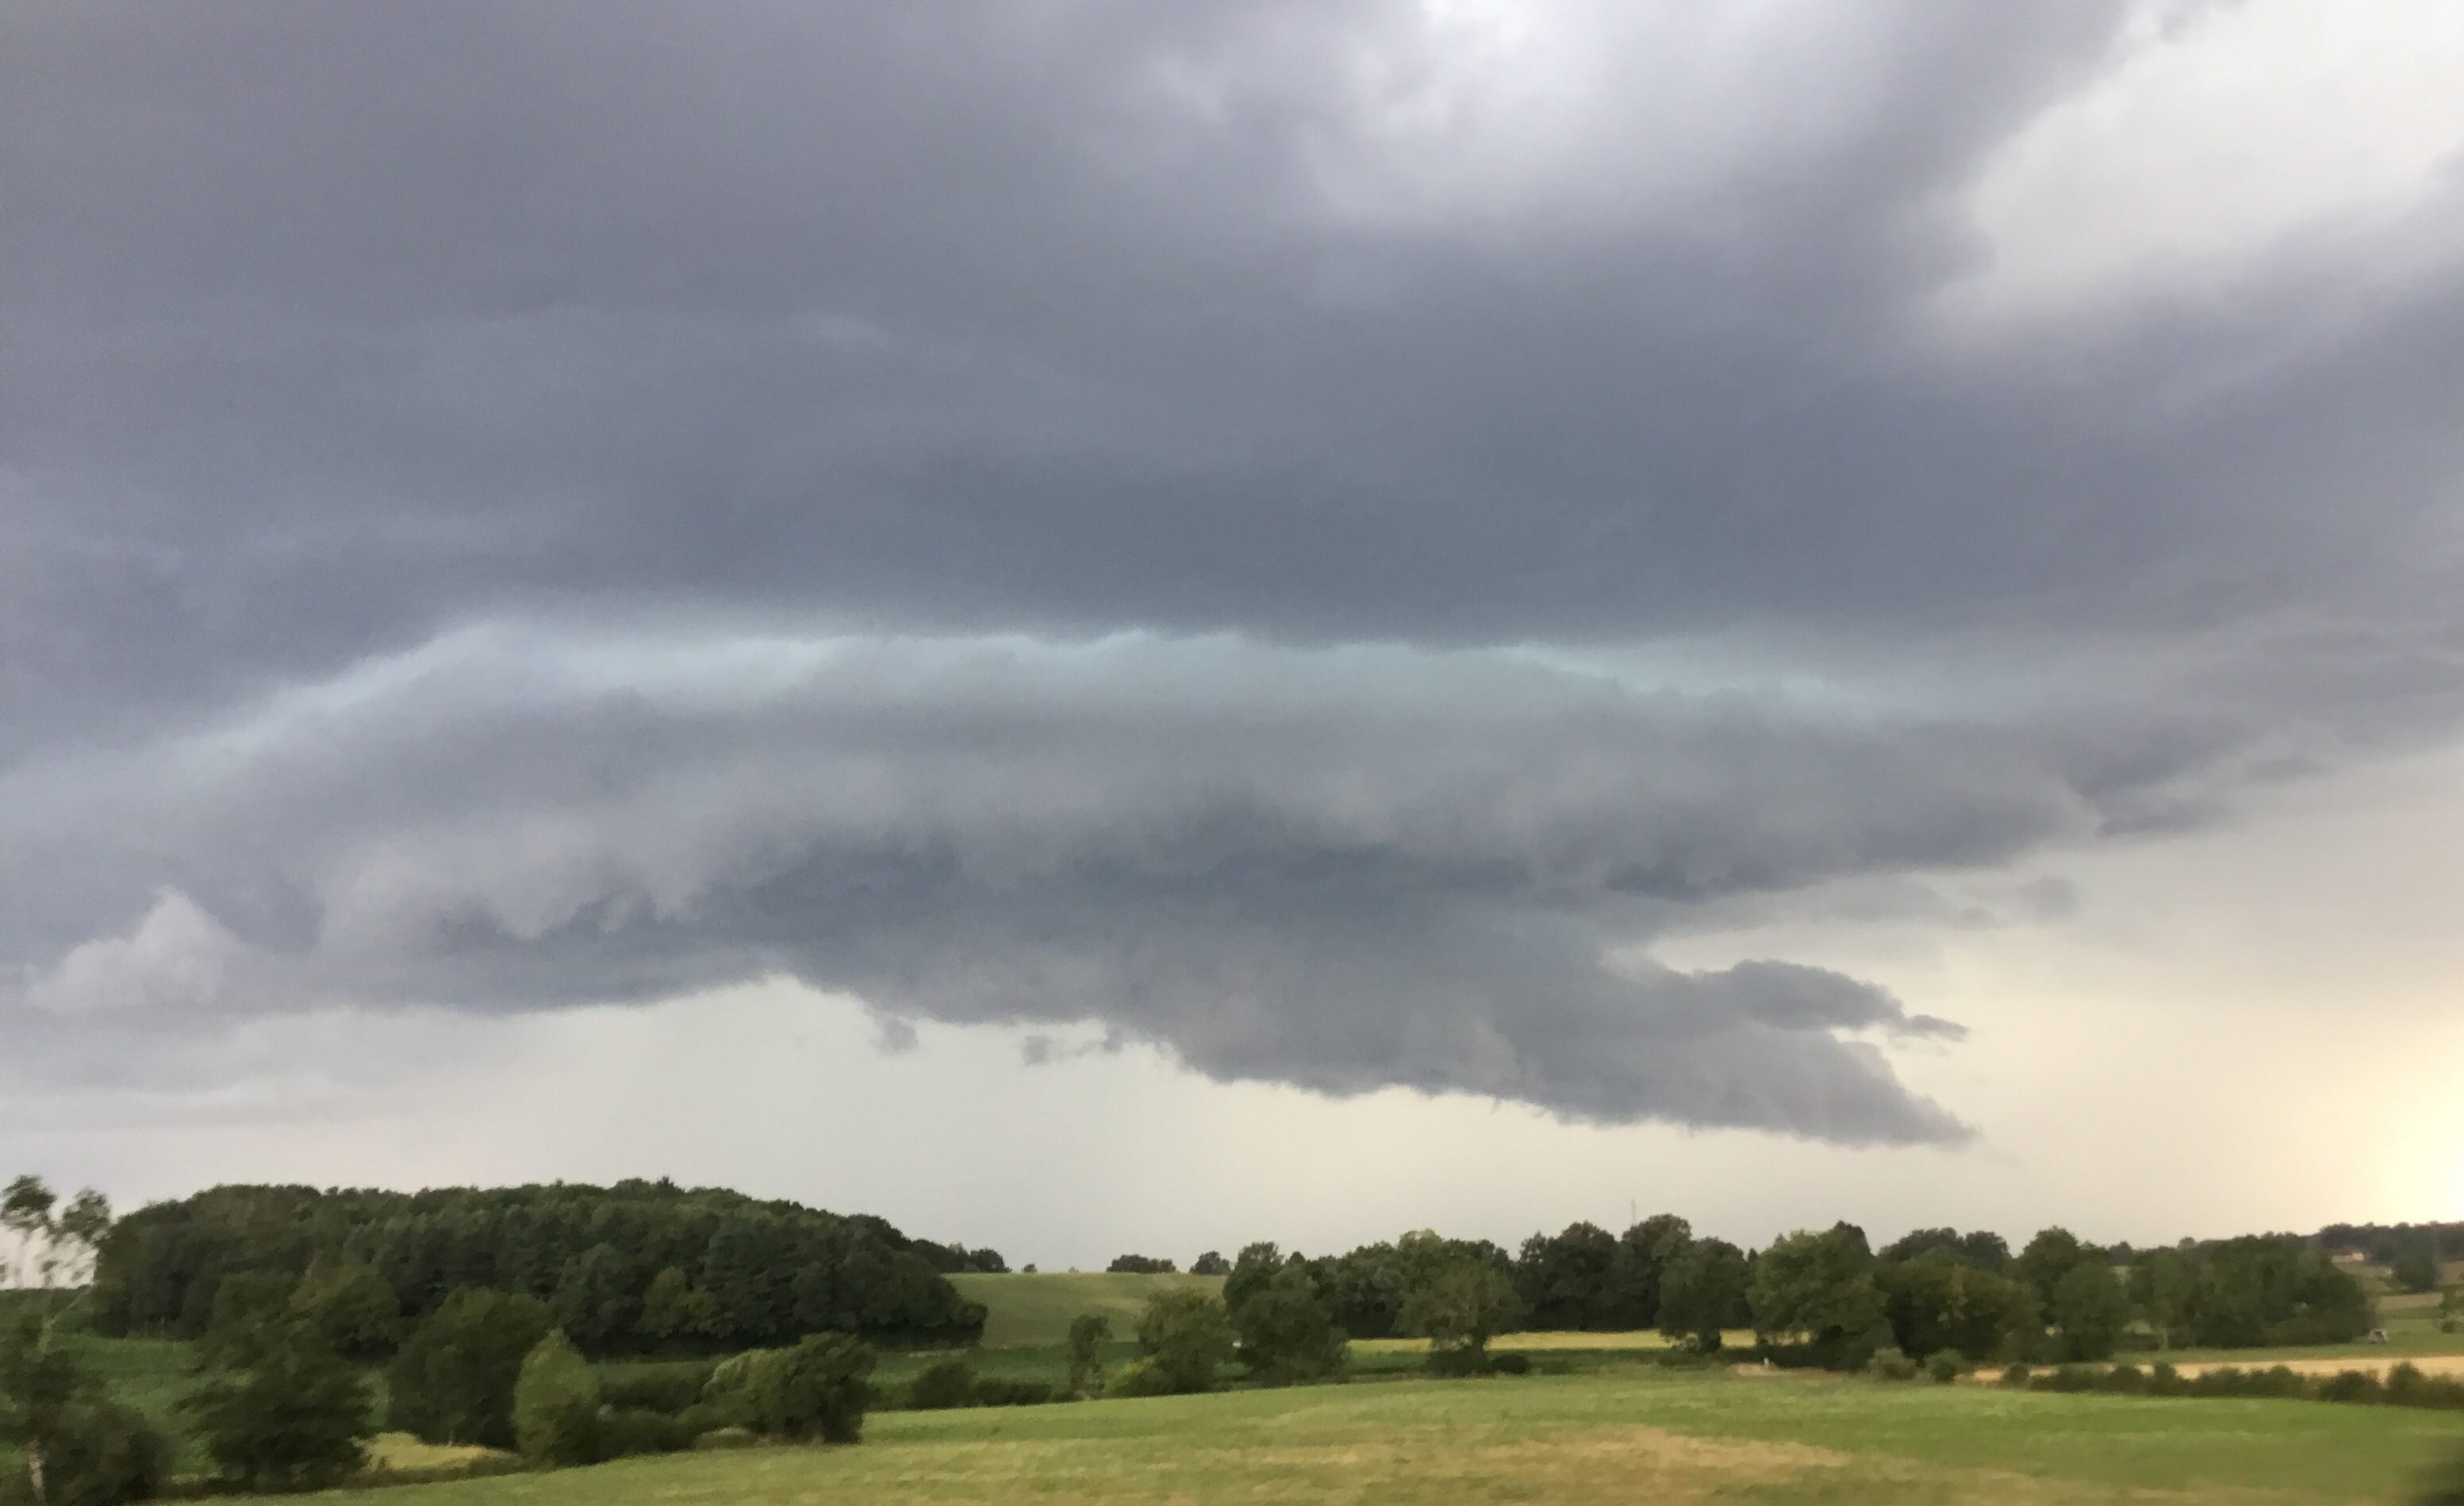 Une base nuageuse menançante avec semble-t-il un nuage mur, approche du rebord jurassien depuis la Bresse. Environs de Bény. - 15/07/2018 18:29 - Olivier Julian